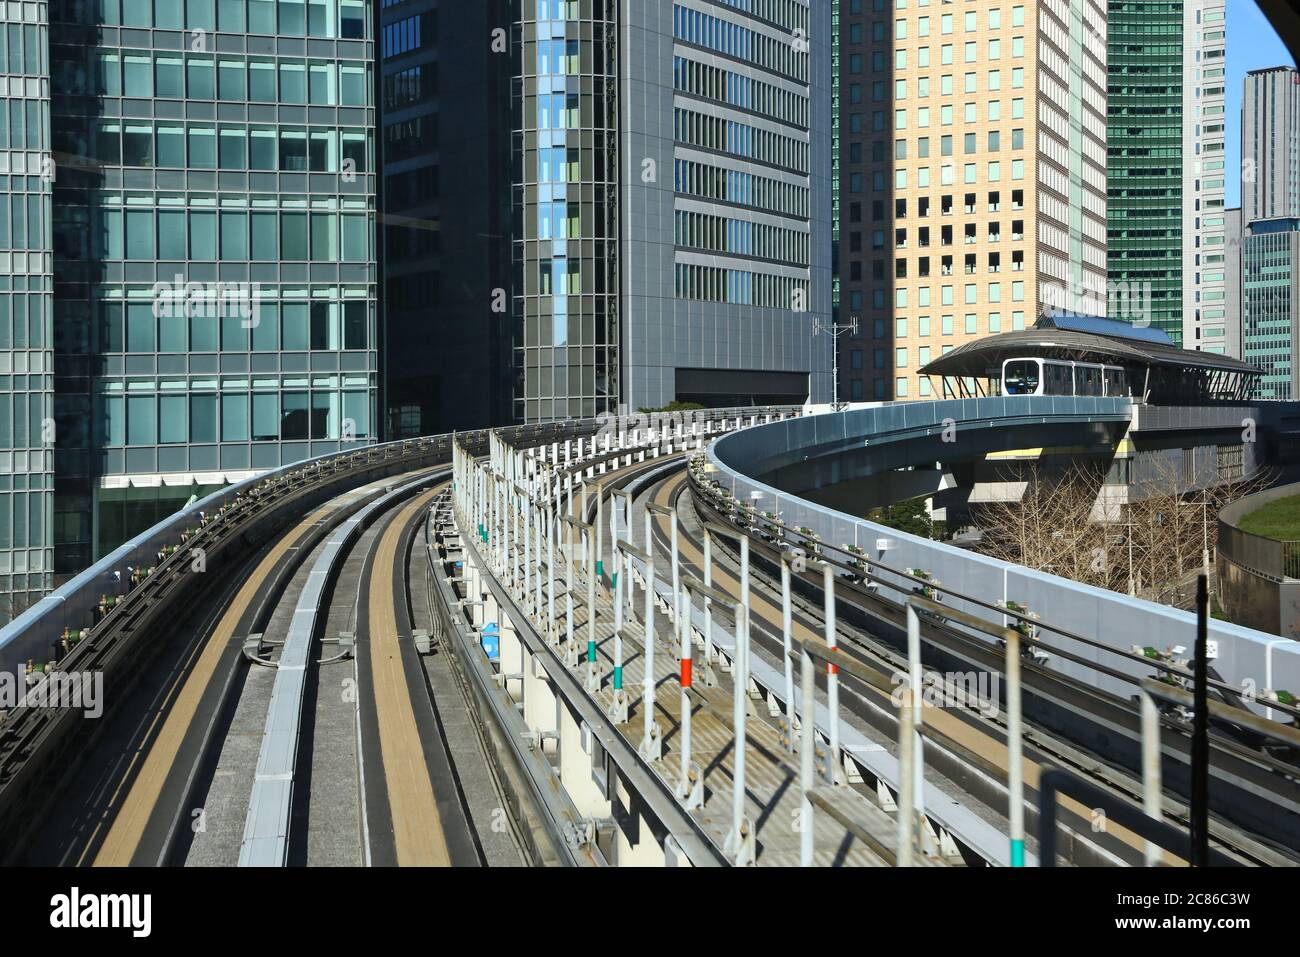 Moderne öffentliche Verkehrsmittel in Tokio, Japan. Biegung und Station einer erhöhten Eisenbahn. Stockfoto